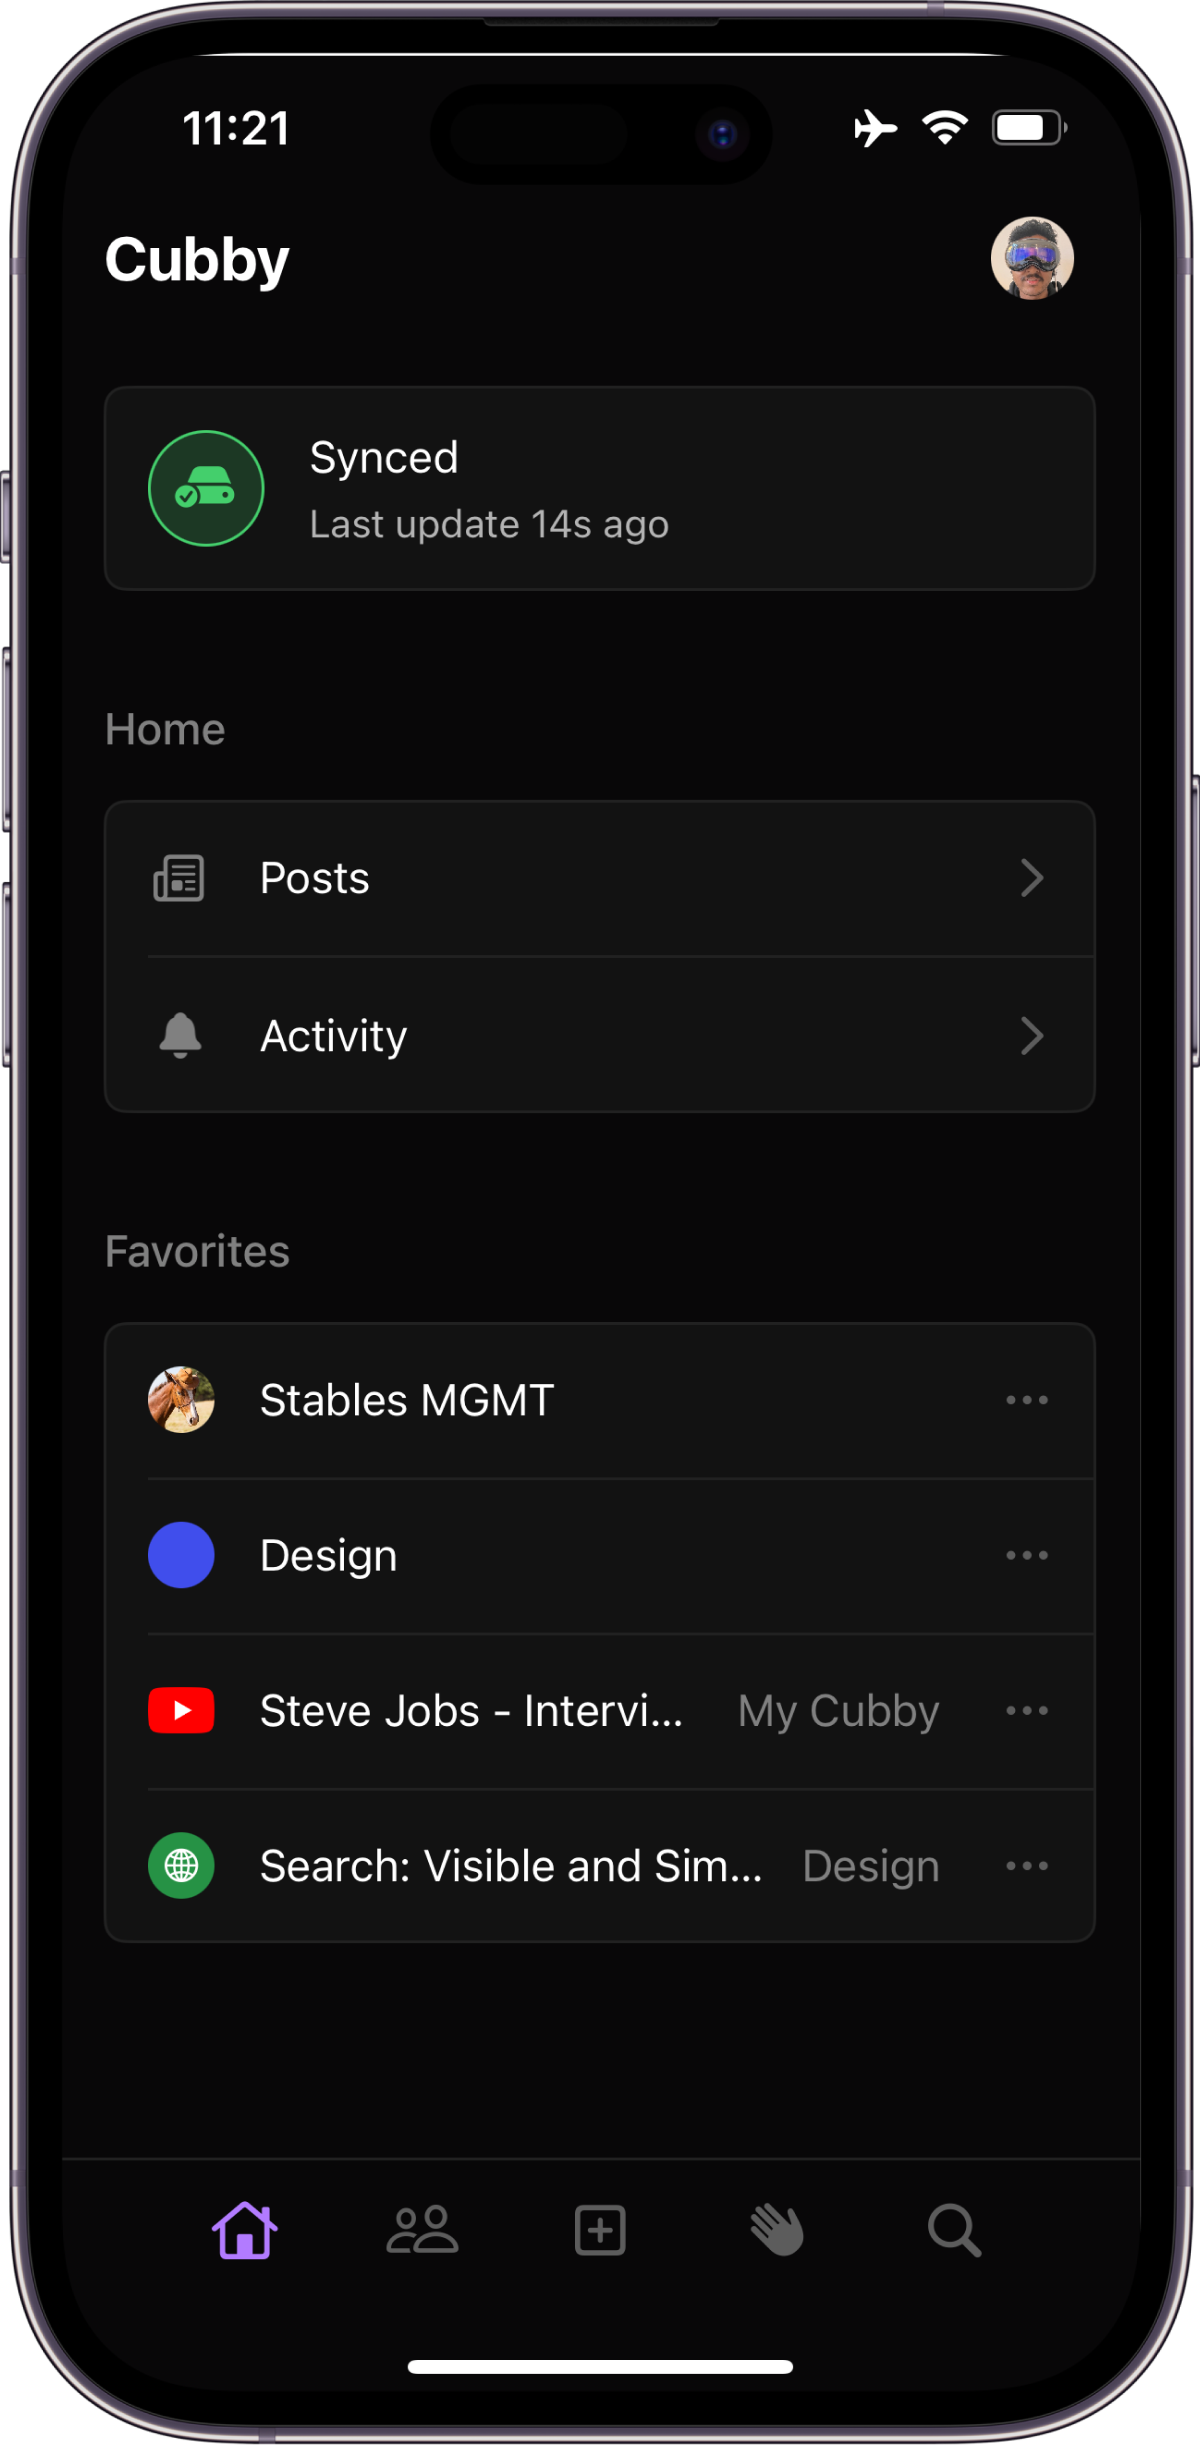 Cubby iOS app home